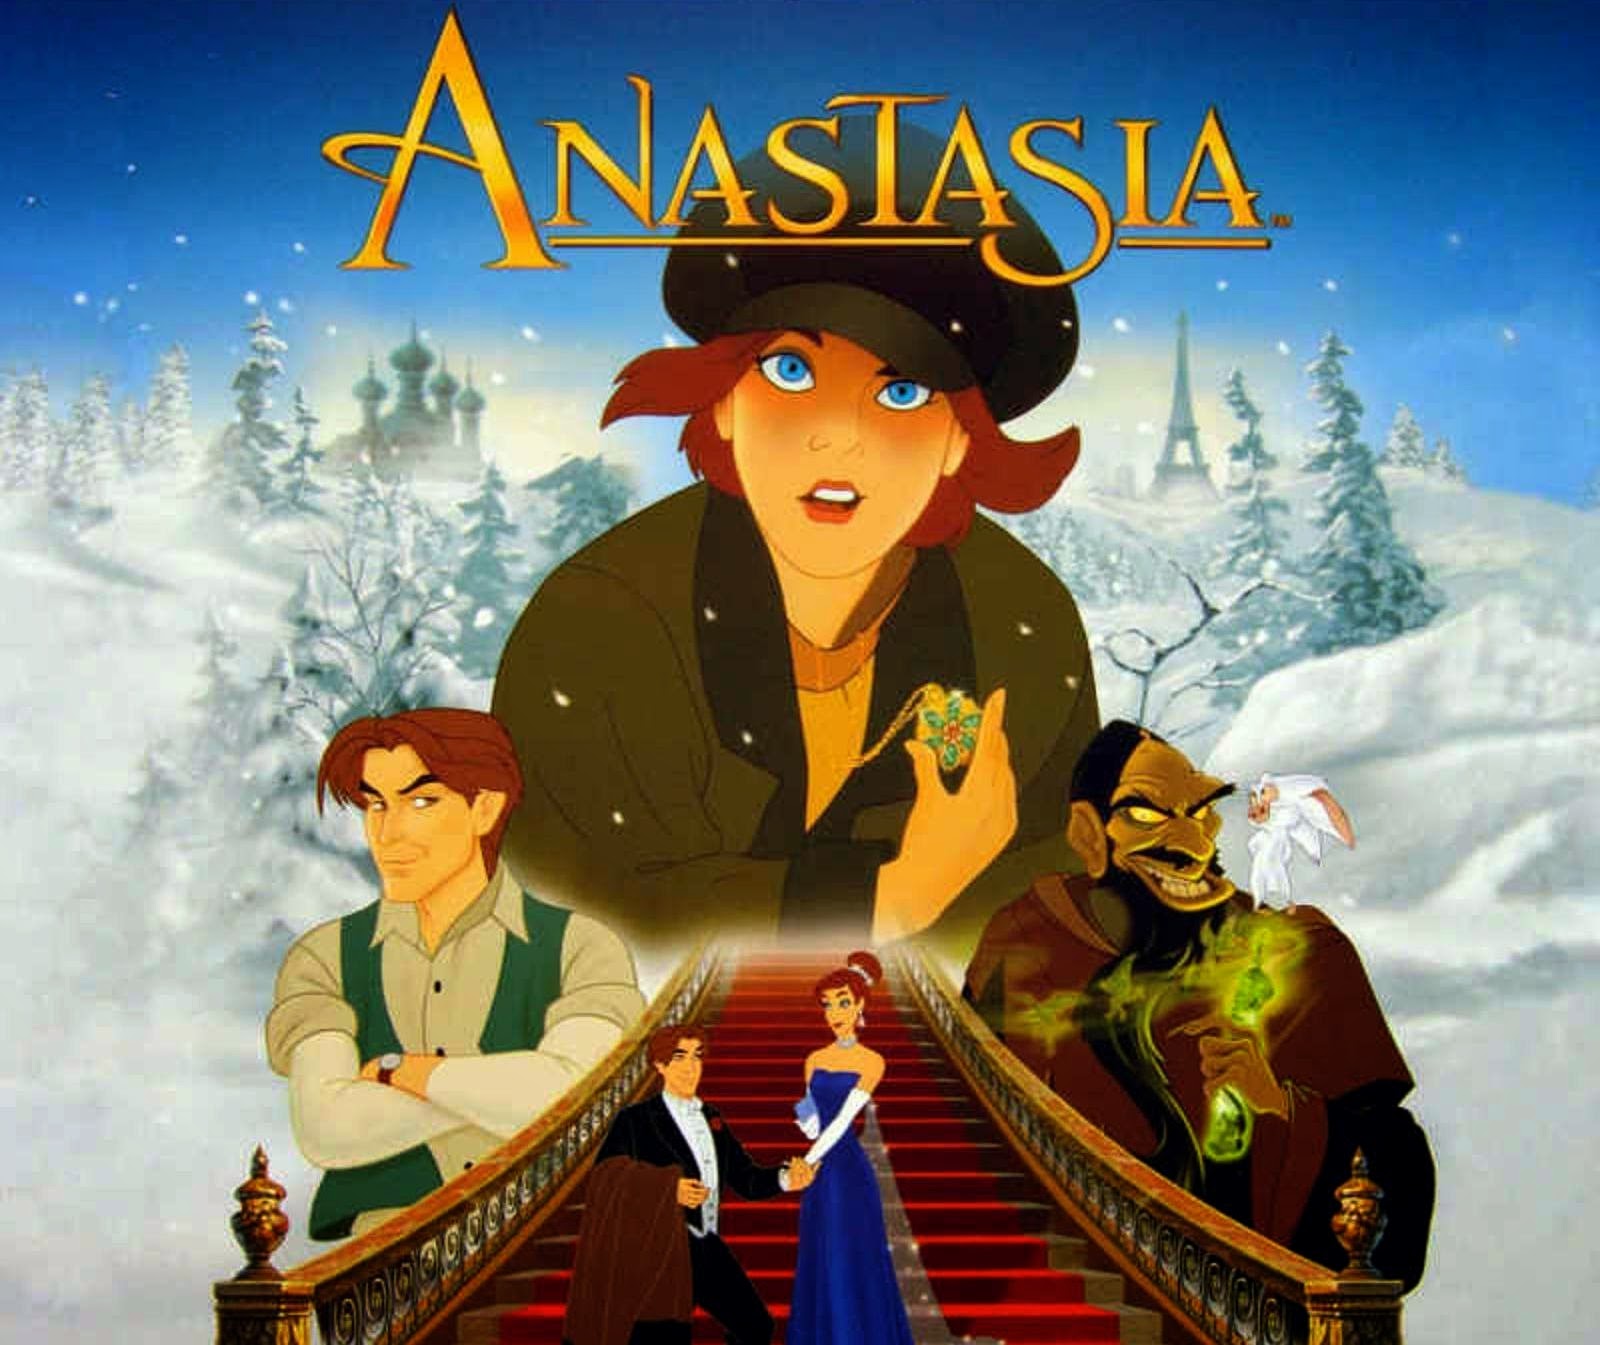 Anastasia film d'animation pour enfants sorti au cinéma en 1998